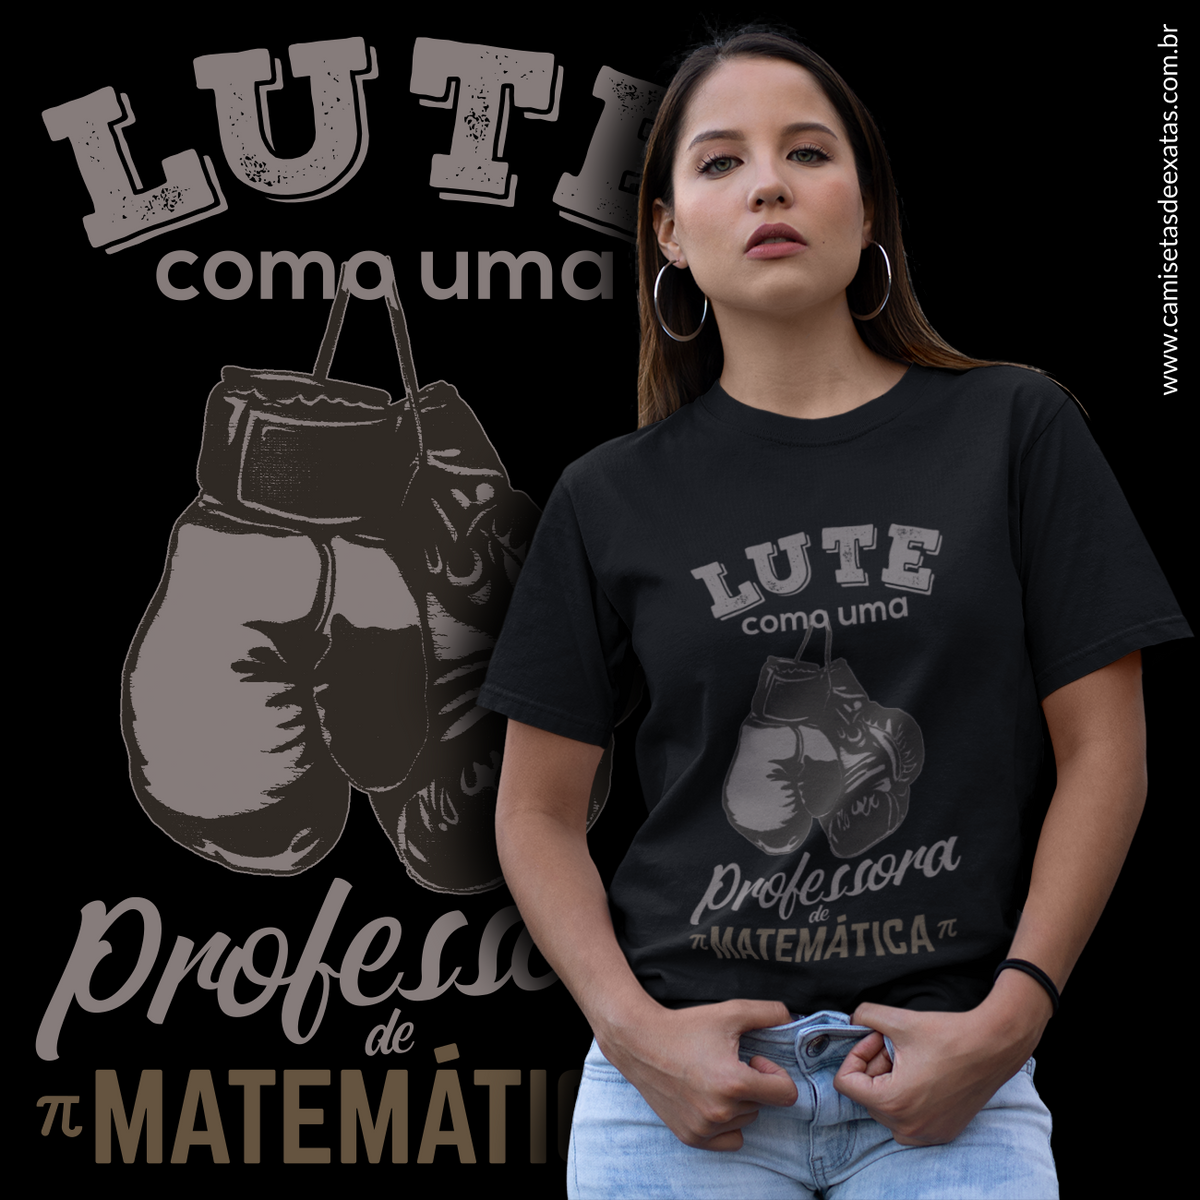 Nome do produto: LUTE COMO UMA PROFESSORA DE MATEMÁTICA [1] [UNISSEX]